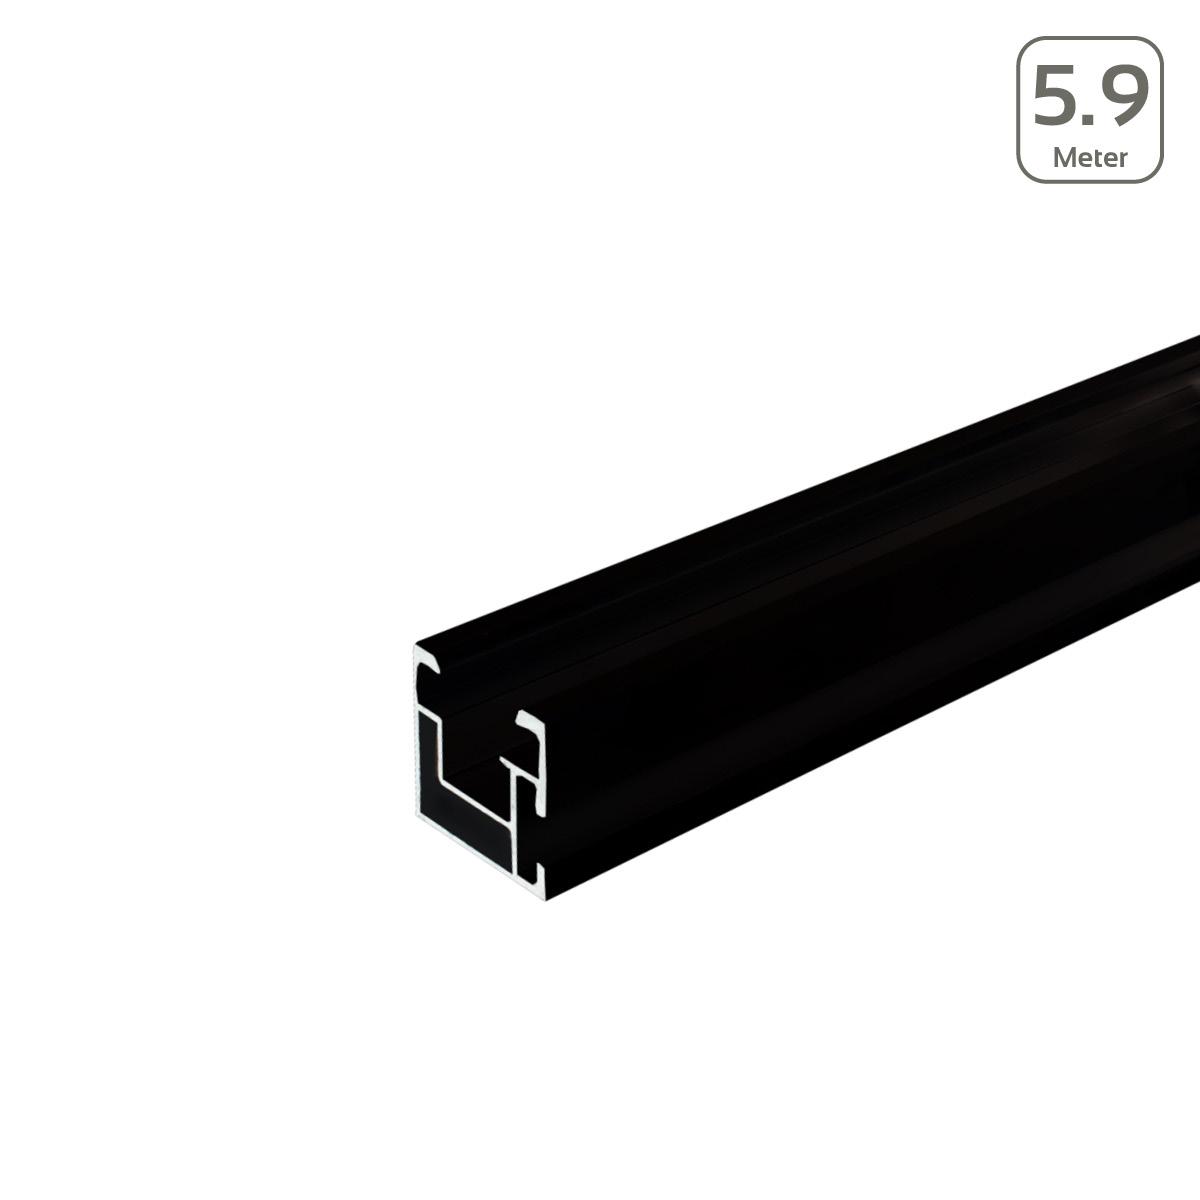 Avanti Profil schwarz eloxiert mit seitlicher Anbindung/Hammerkopfschr. M10 - Länge: 5,9 Meter - MwSt: 0% NUR für Privatkunden